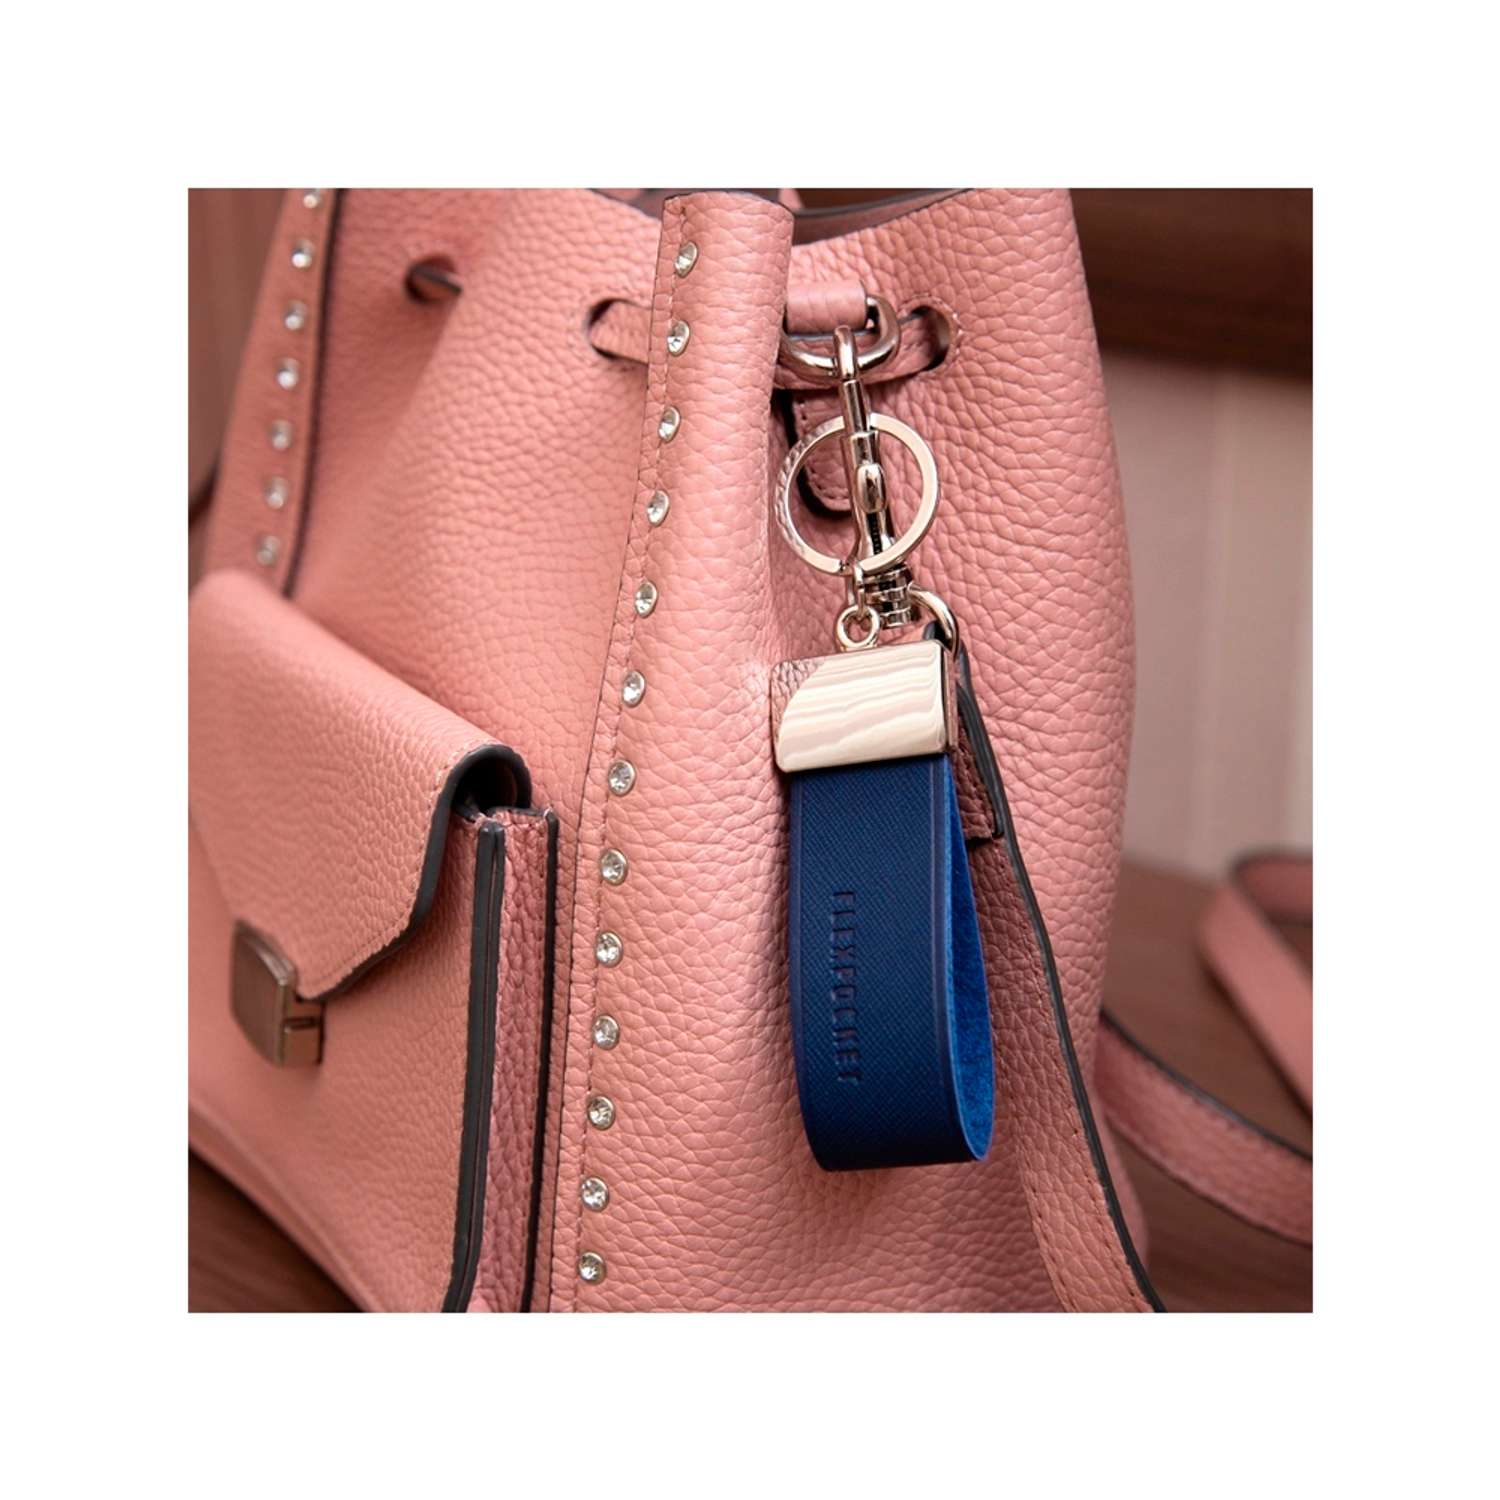 Брелок Flexpocket темно-синего цвета для ключей или на сумку - фото 4